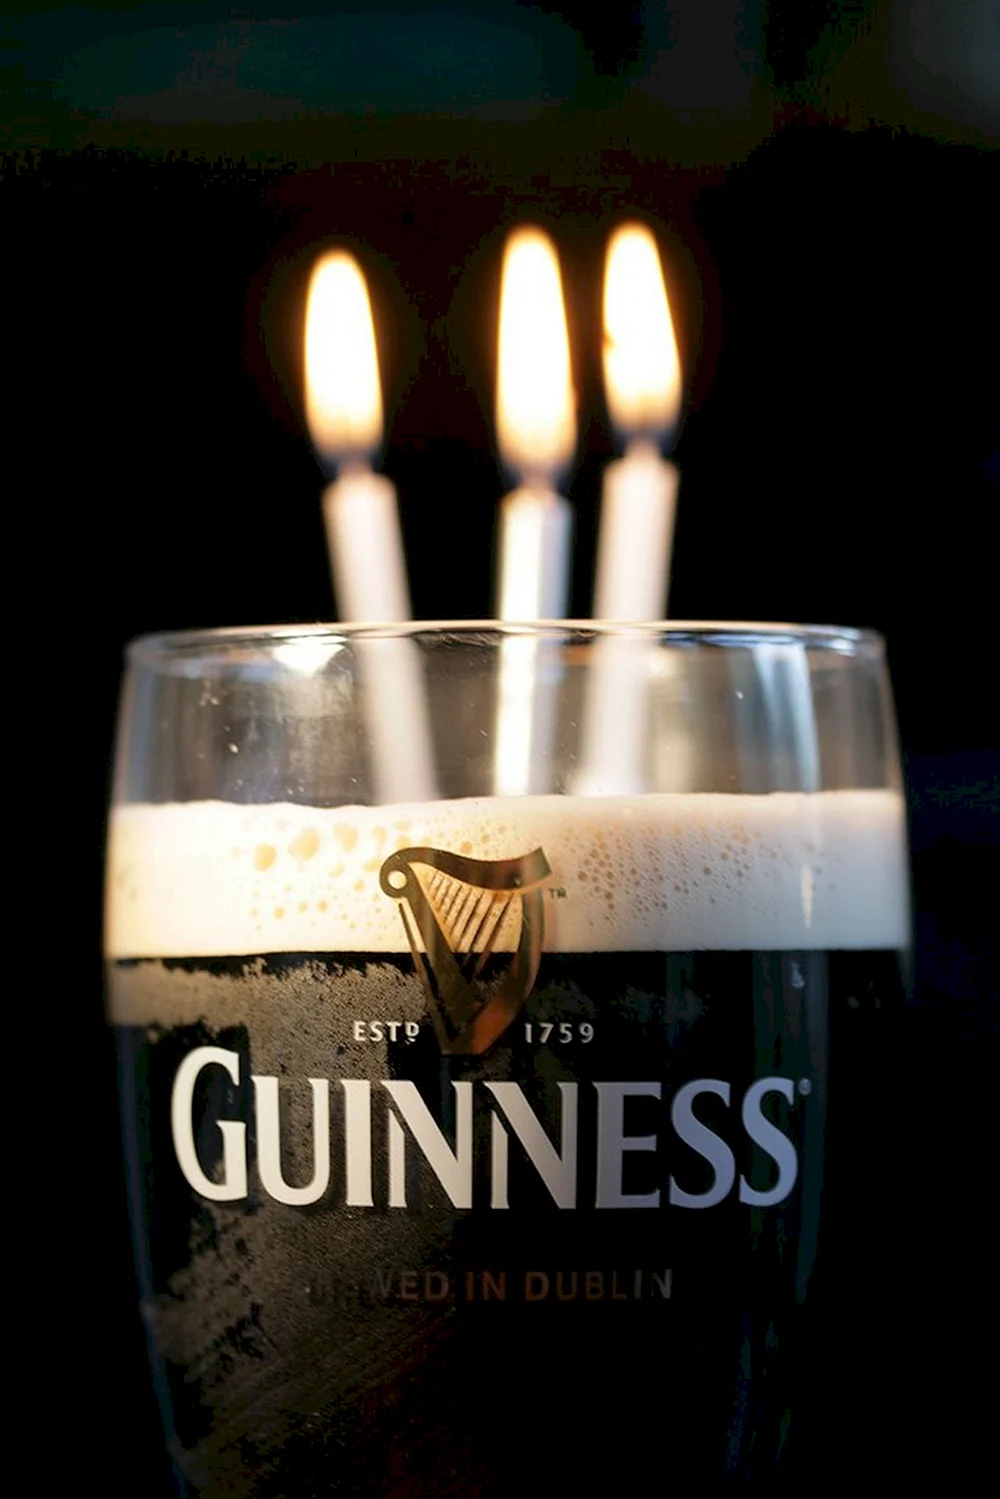 С днем рождения Guinness